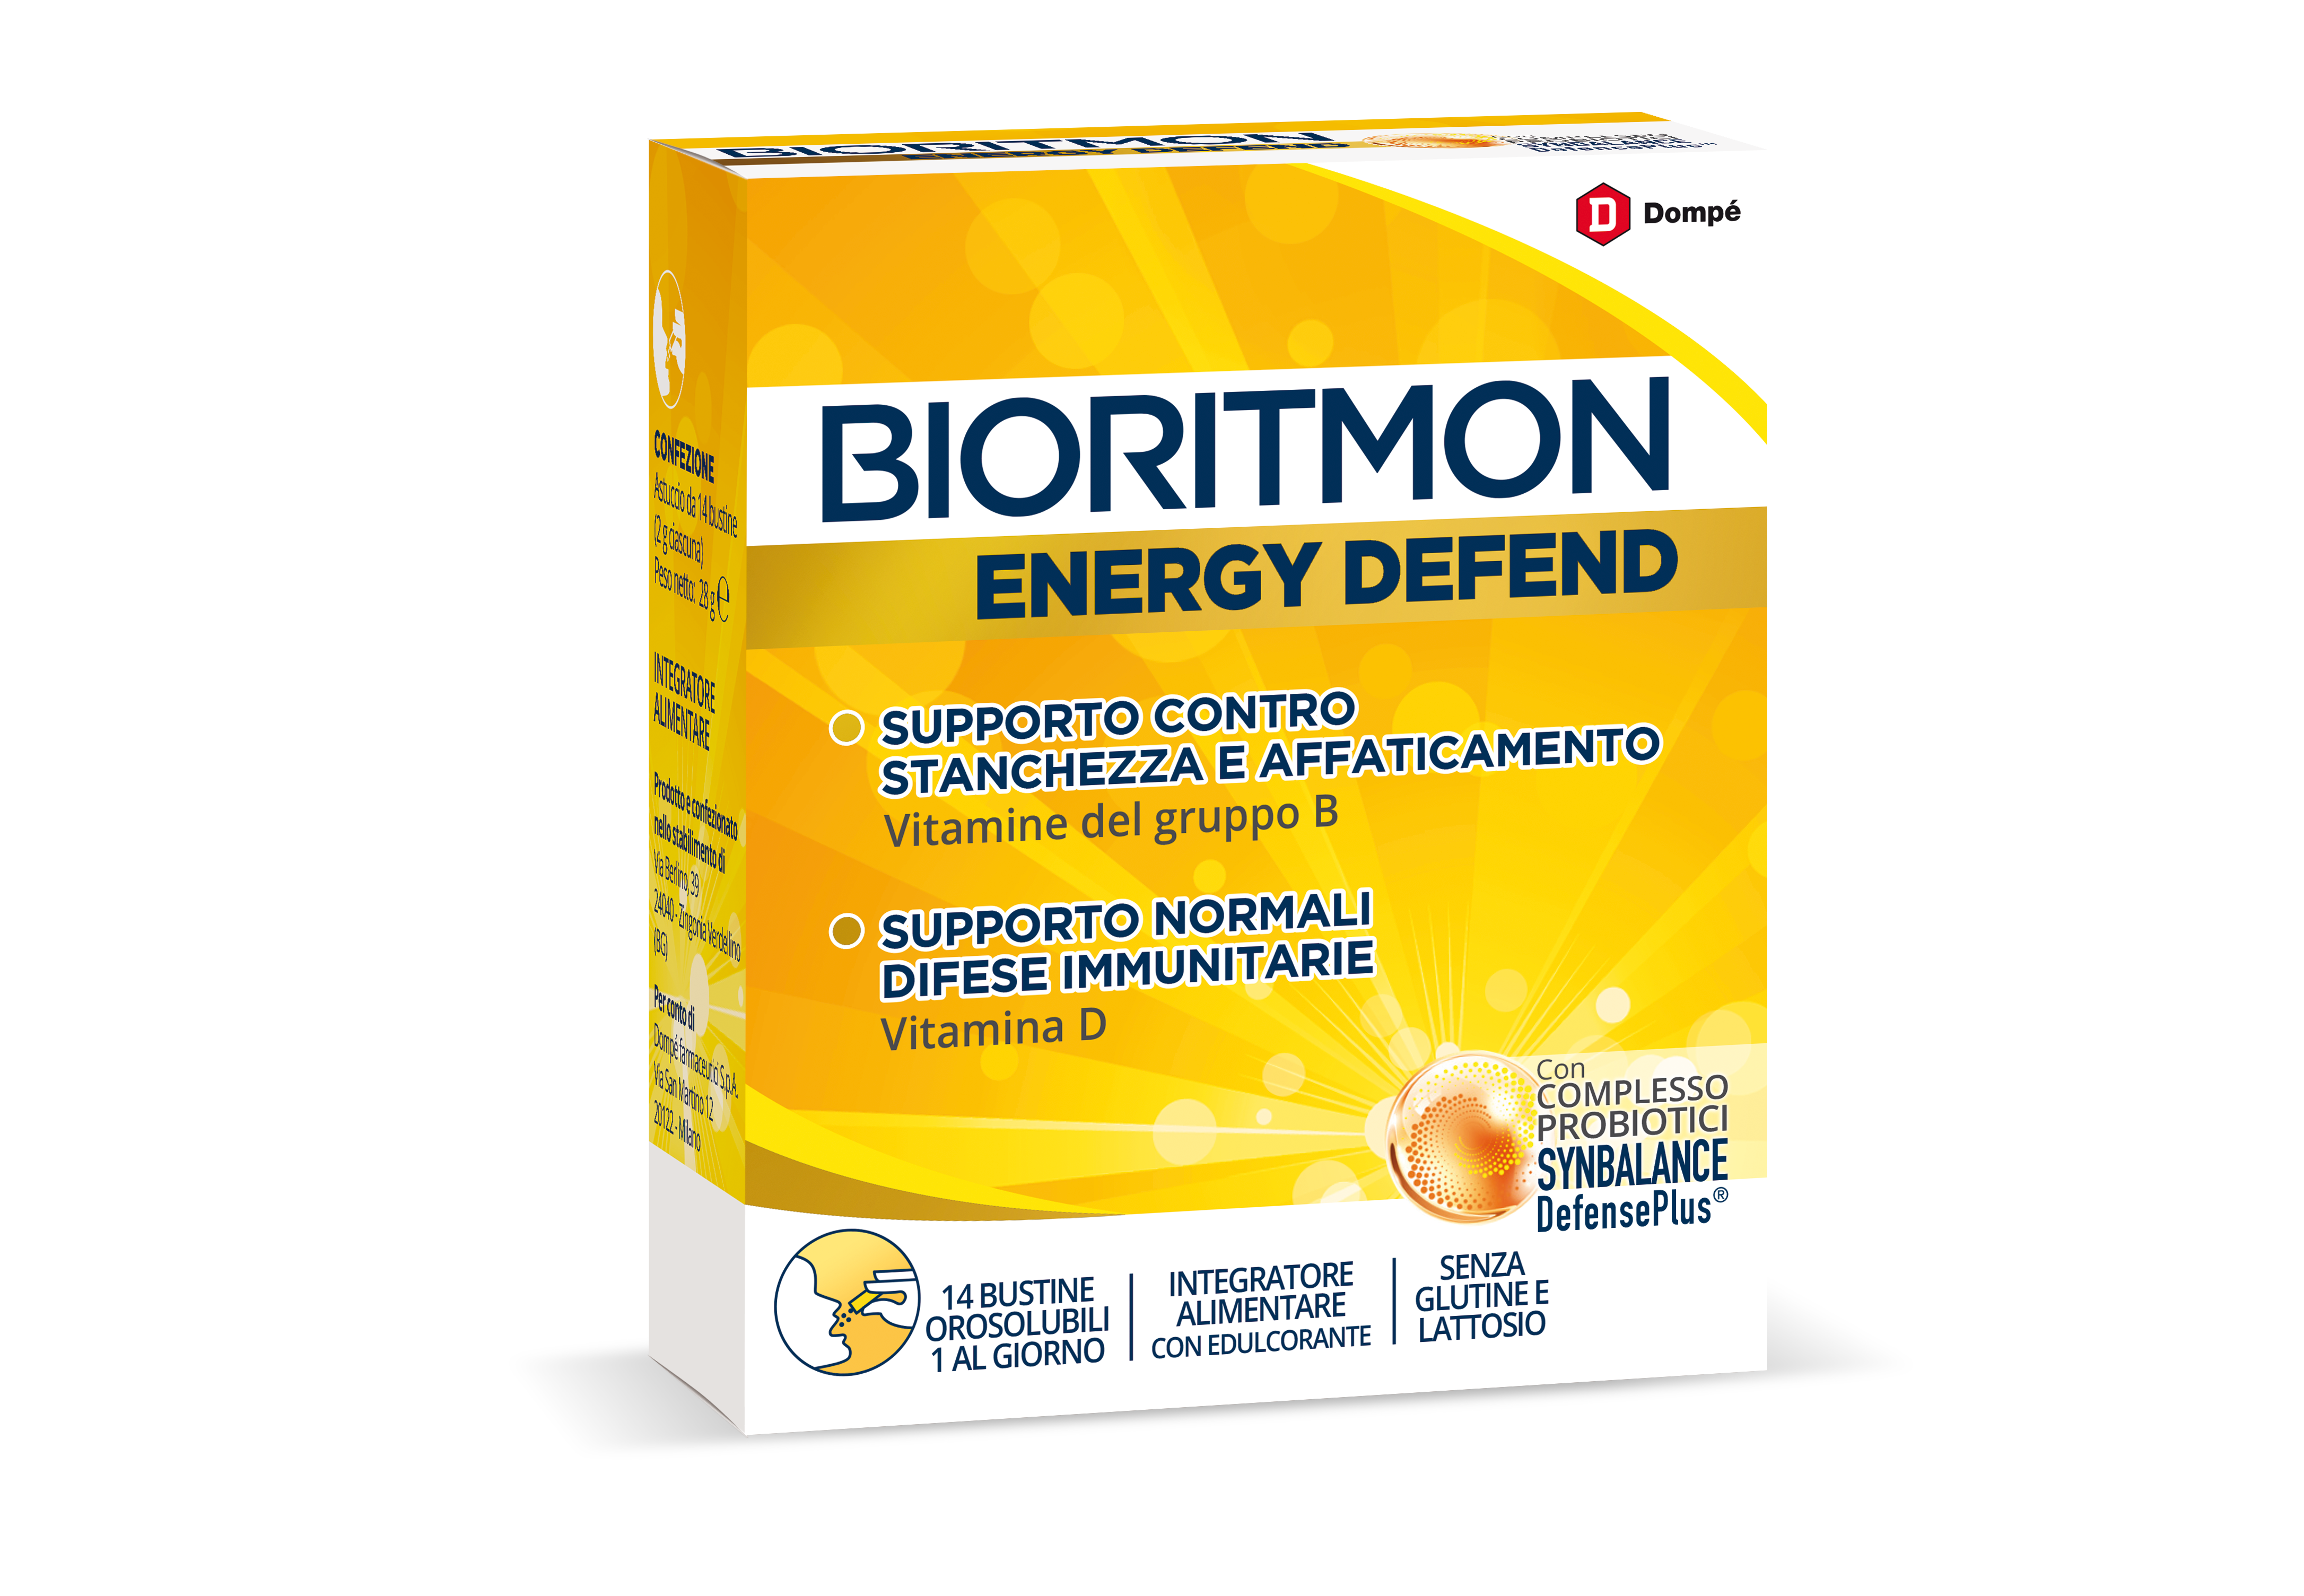 Bioritmon Energy Defend, integratore alimentare vitamine B6, B12, B9, D per stanchezza